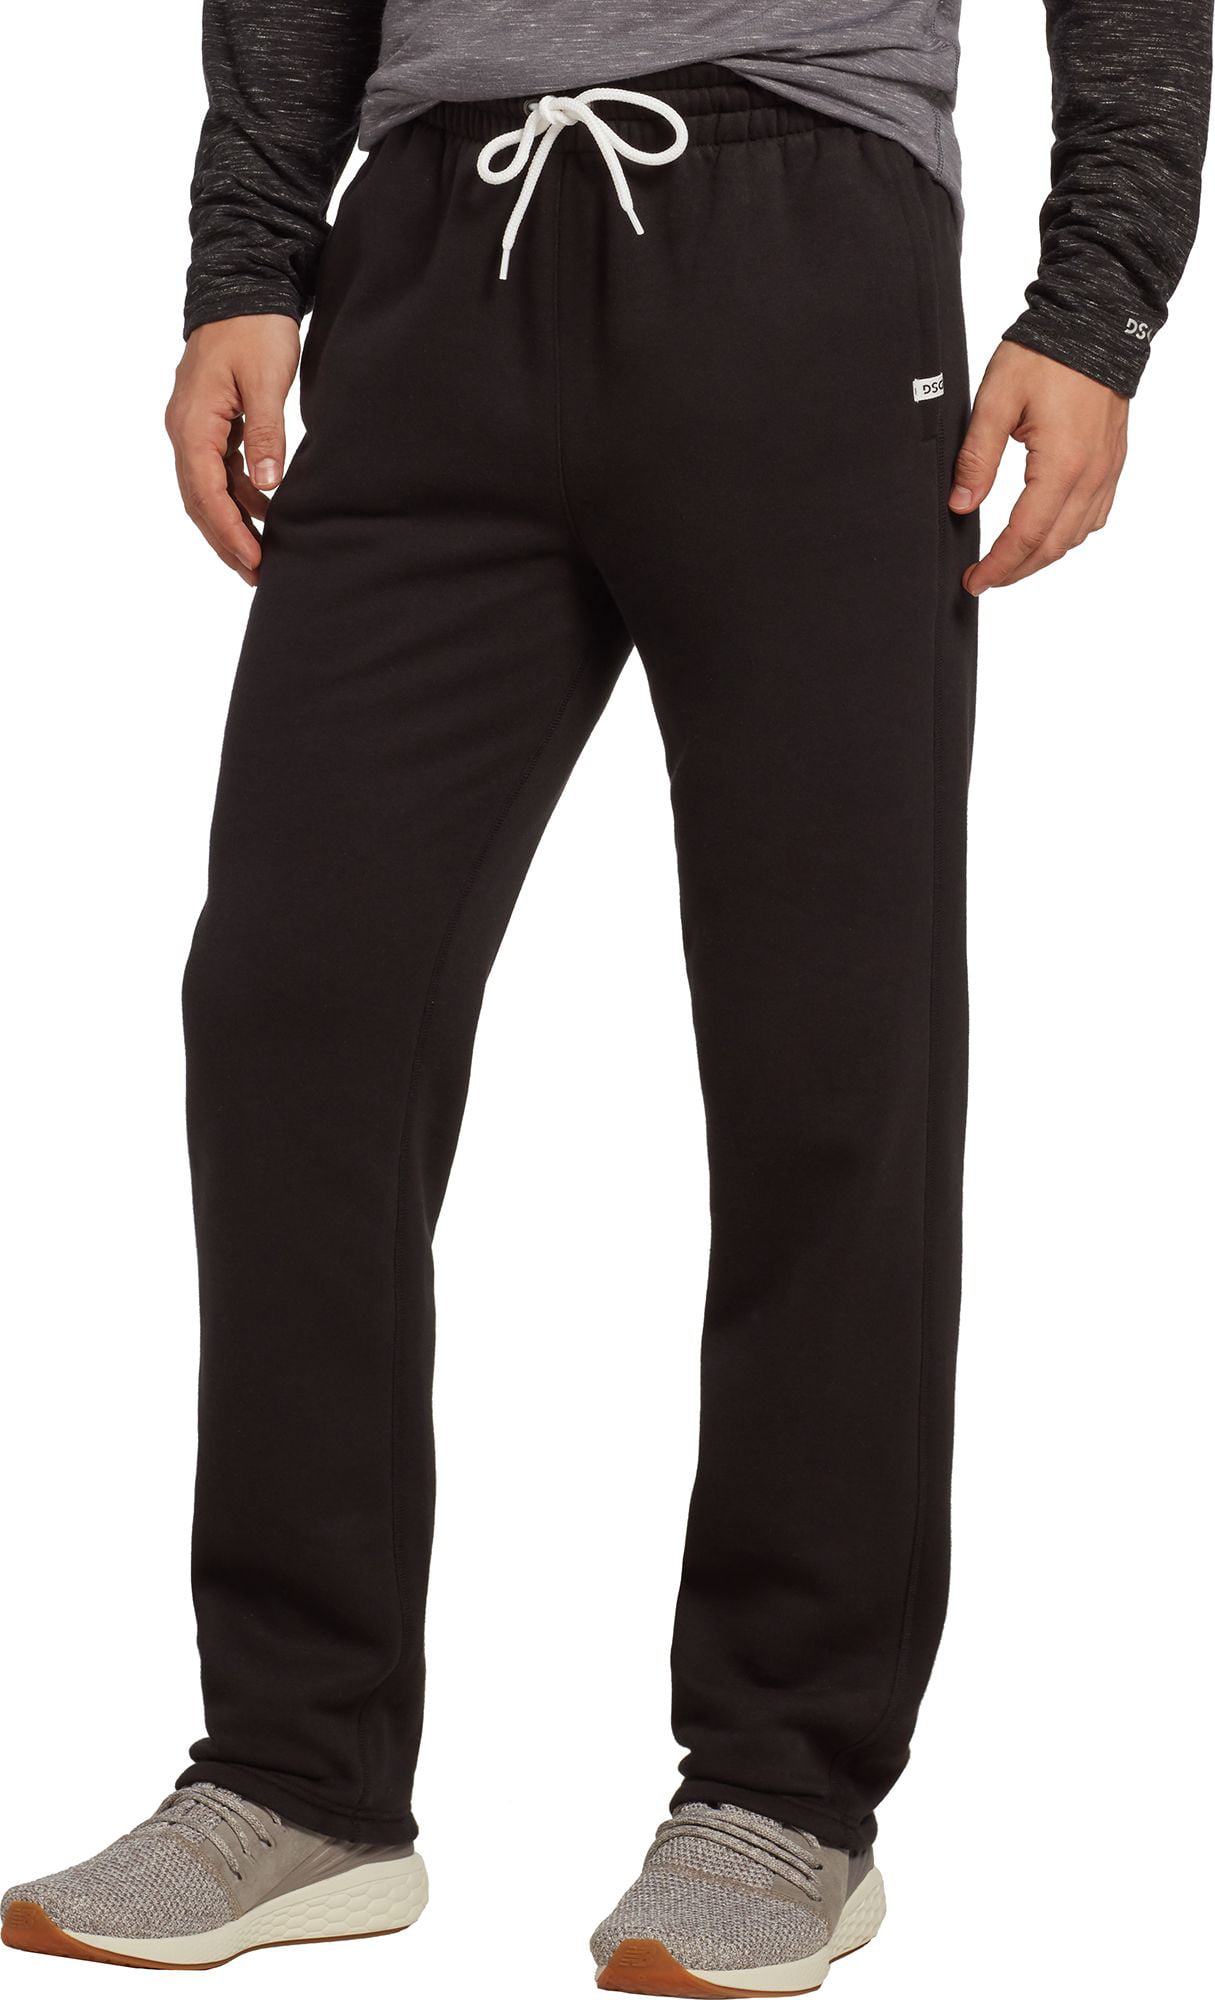 DSG Outerwear - DSG Men's Everyday Cotton Fleece Pants - Walmart.com ...